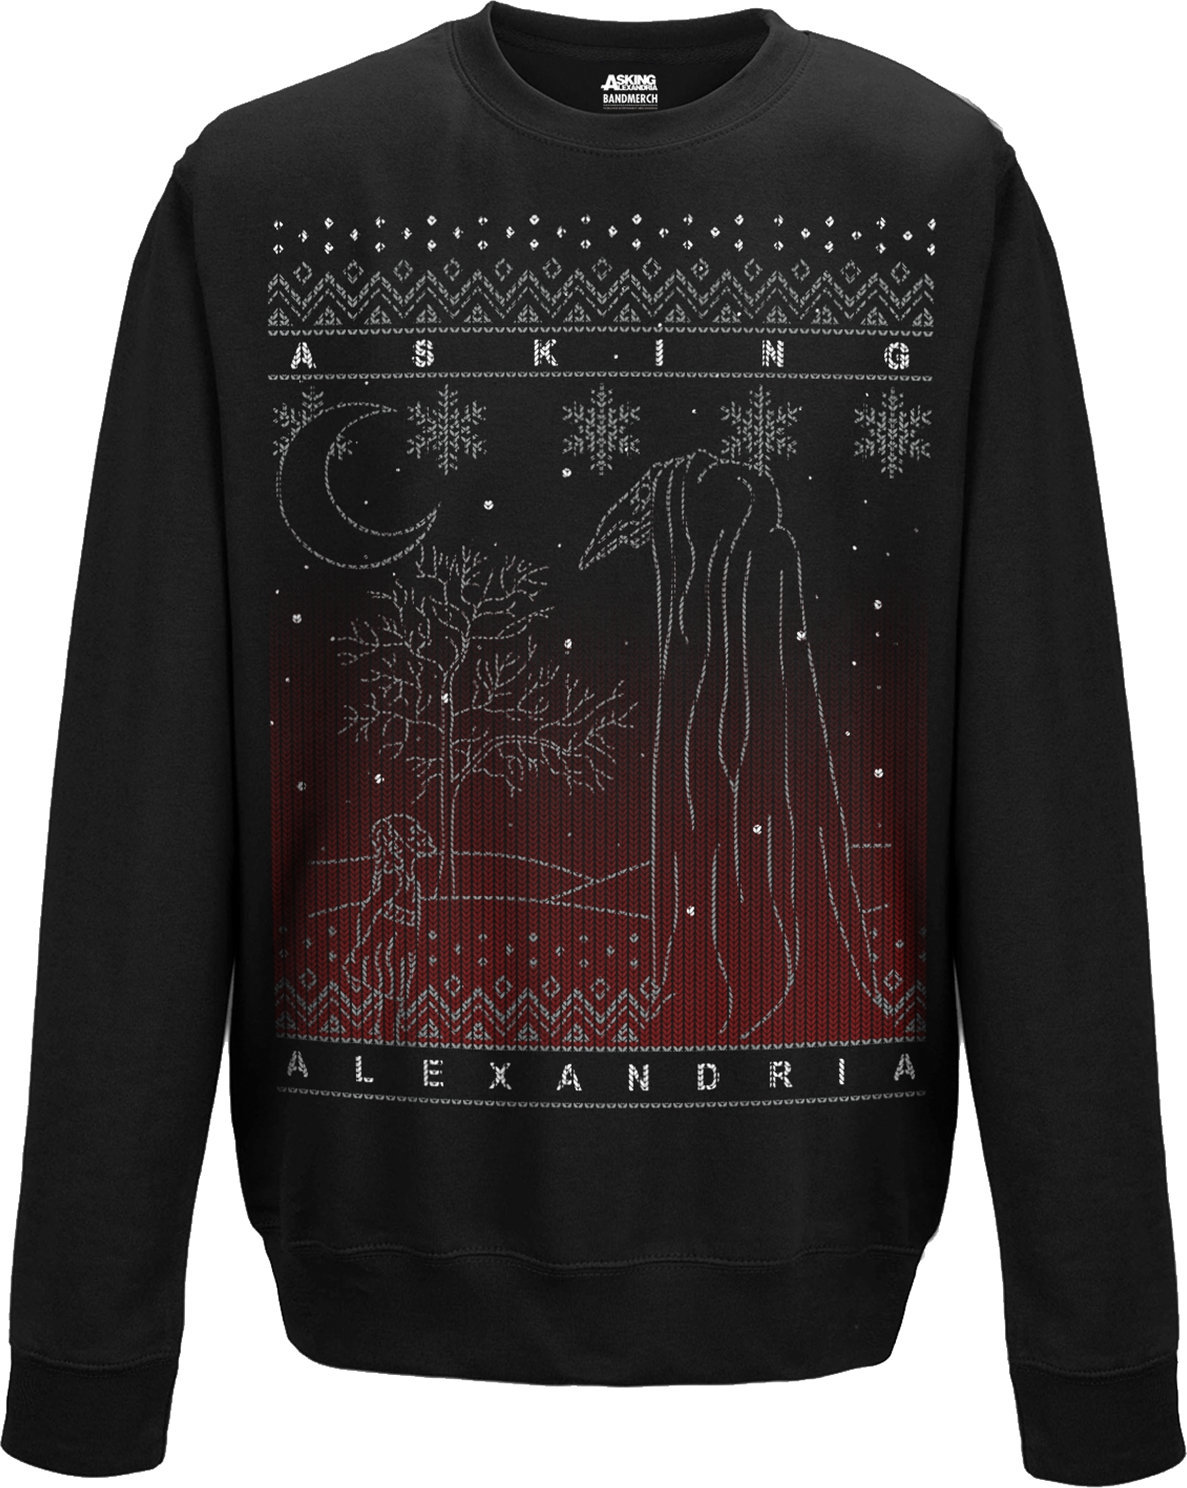 Bluza Asking Alexandria The Black Christmas Crew Neck Sweater XXL